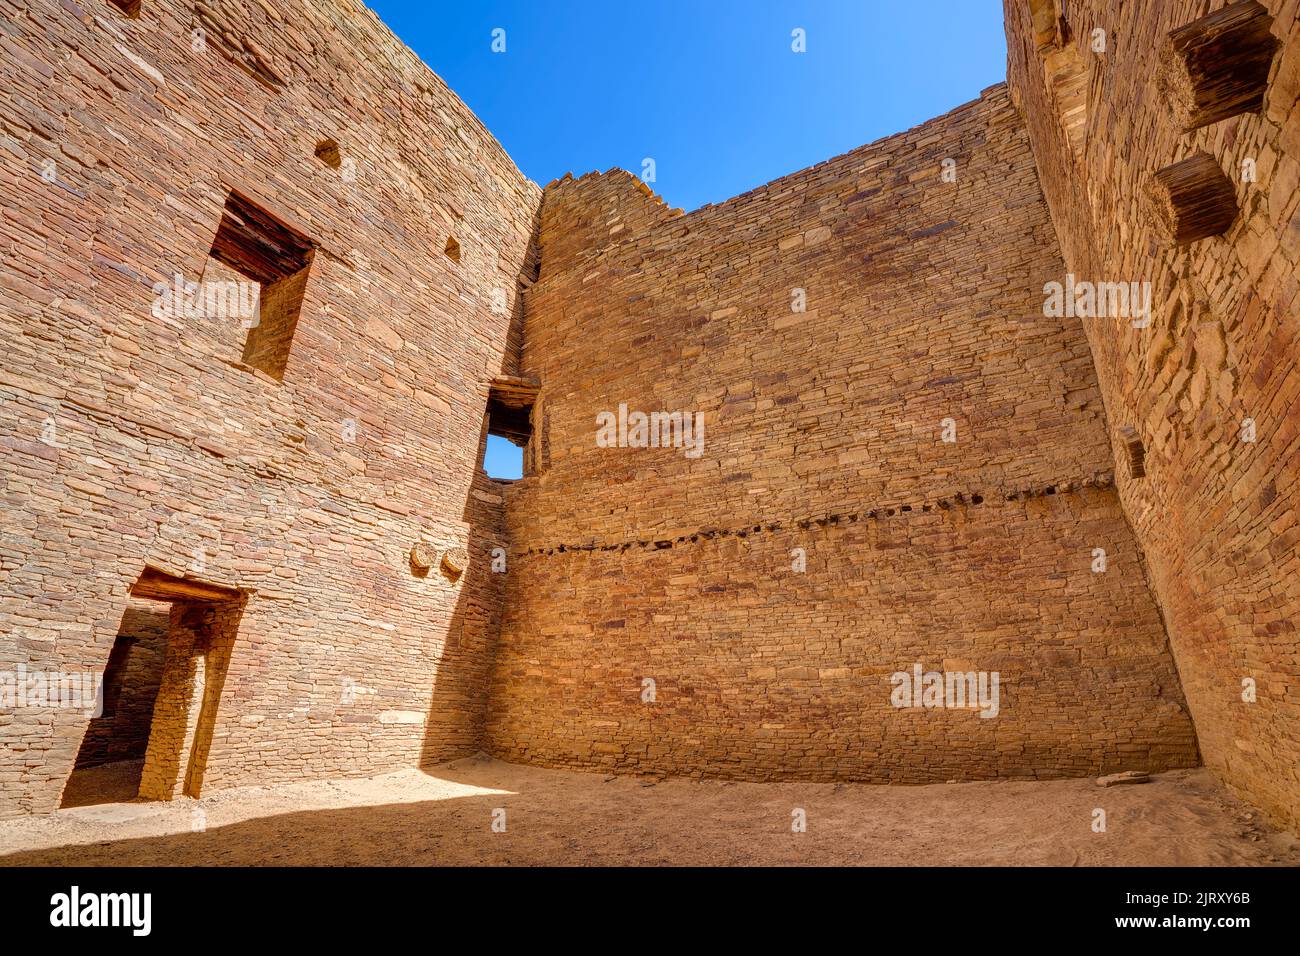 Pueblo Bonito, Chaco Culture National Historic Park, New Mexico, USA Stock Photo